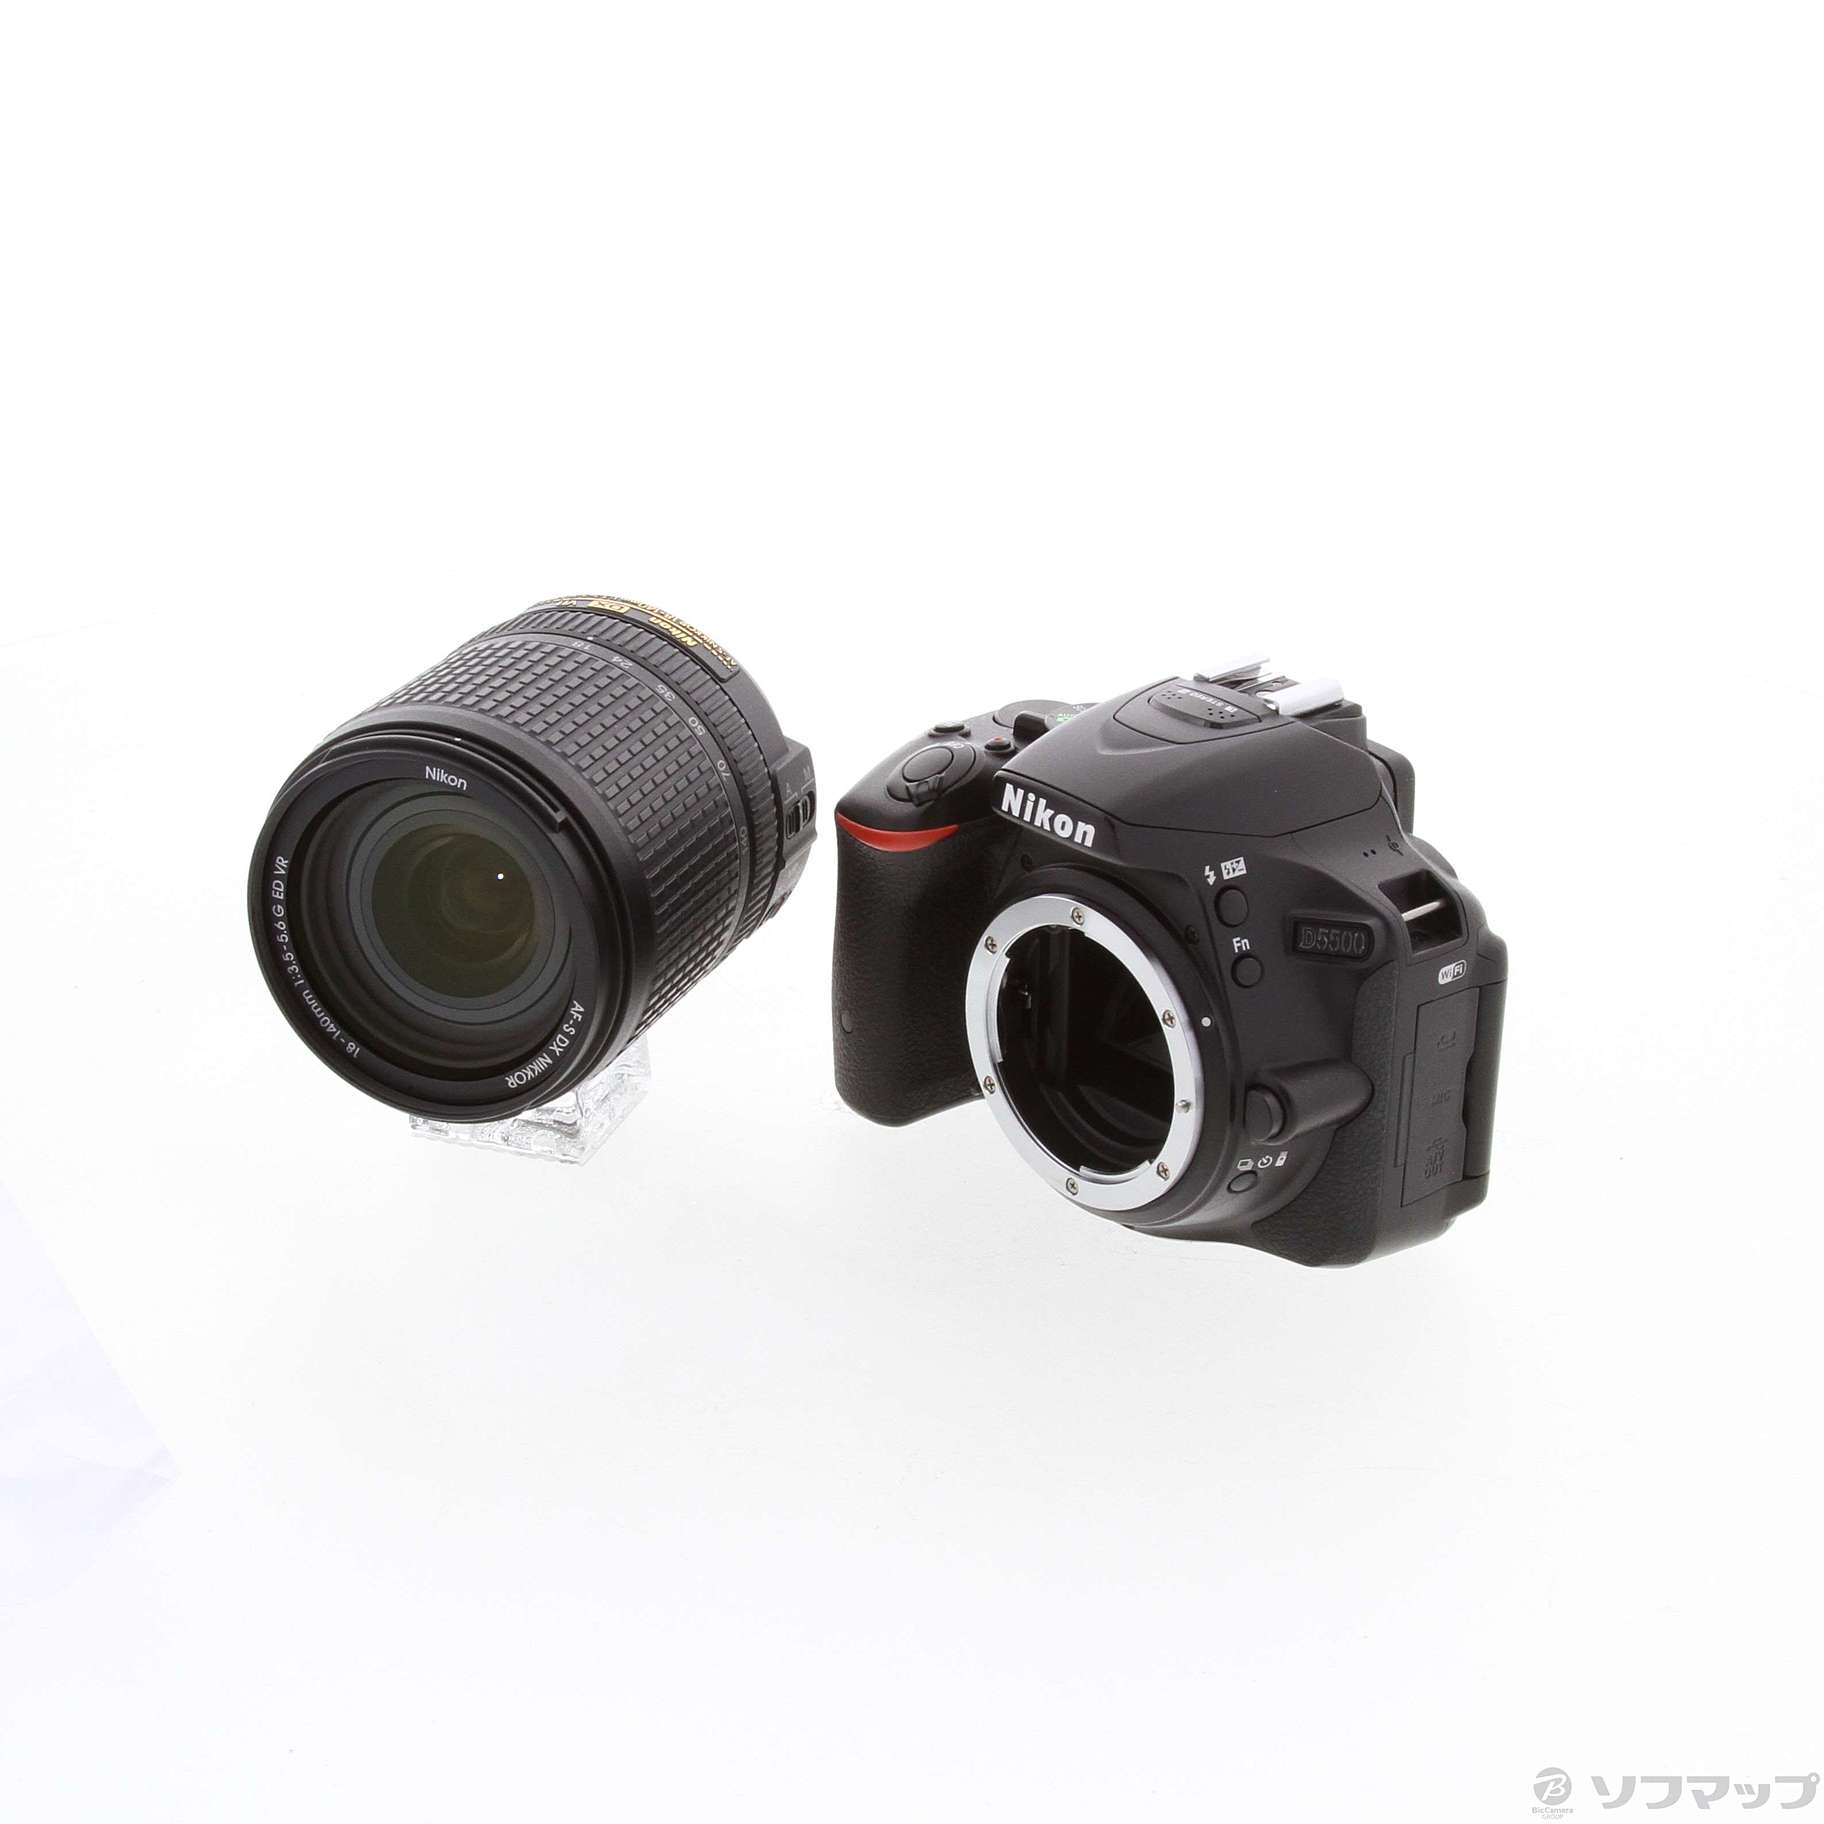 Nikon ニコン D5500 18-140VR レンズキット ブラックNikon